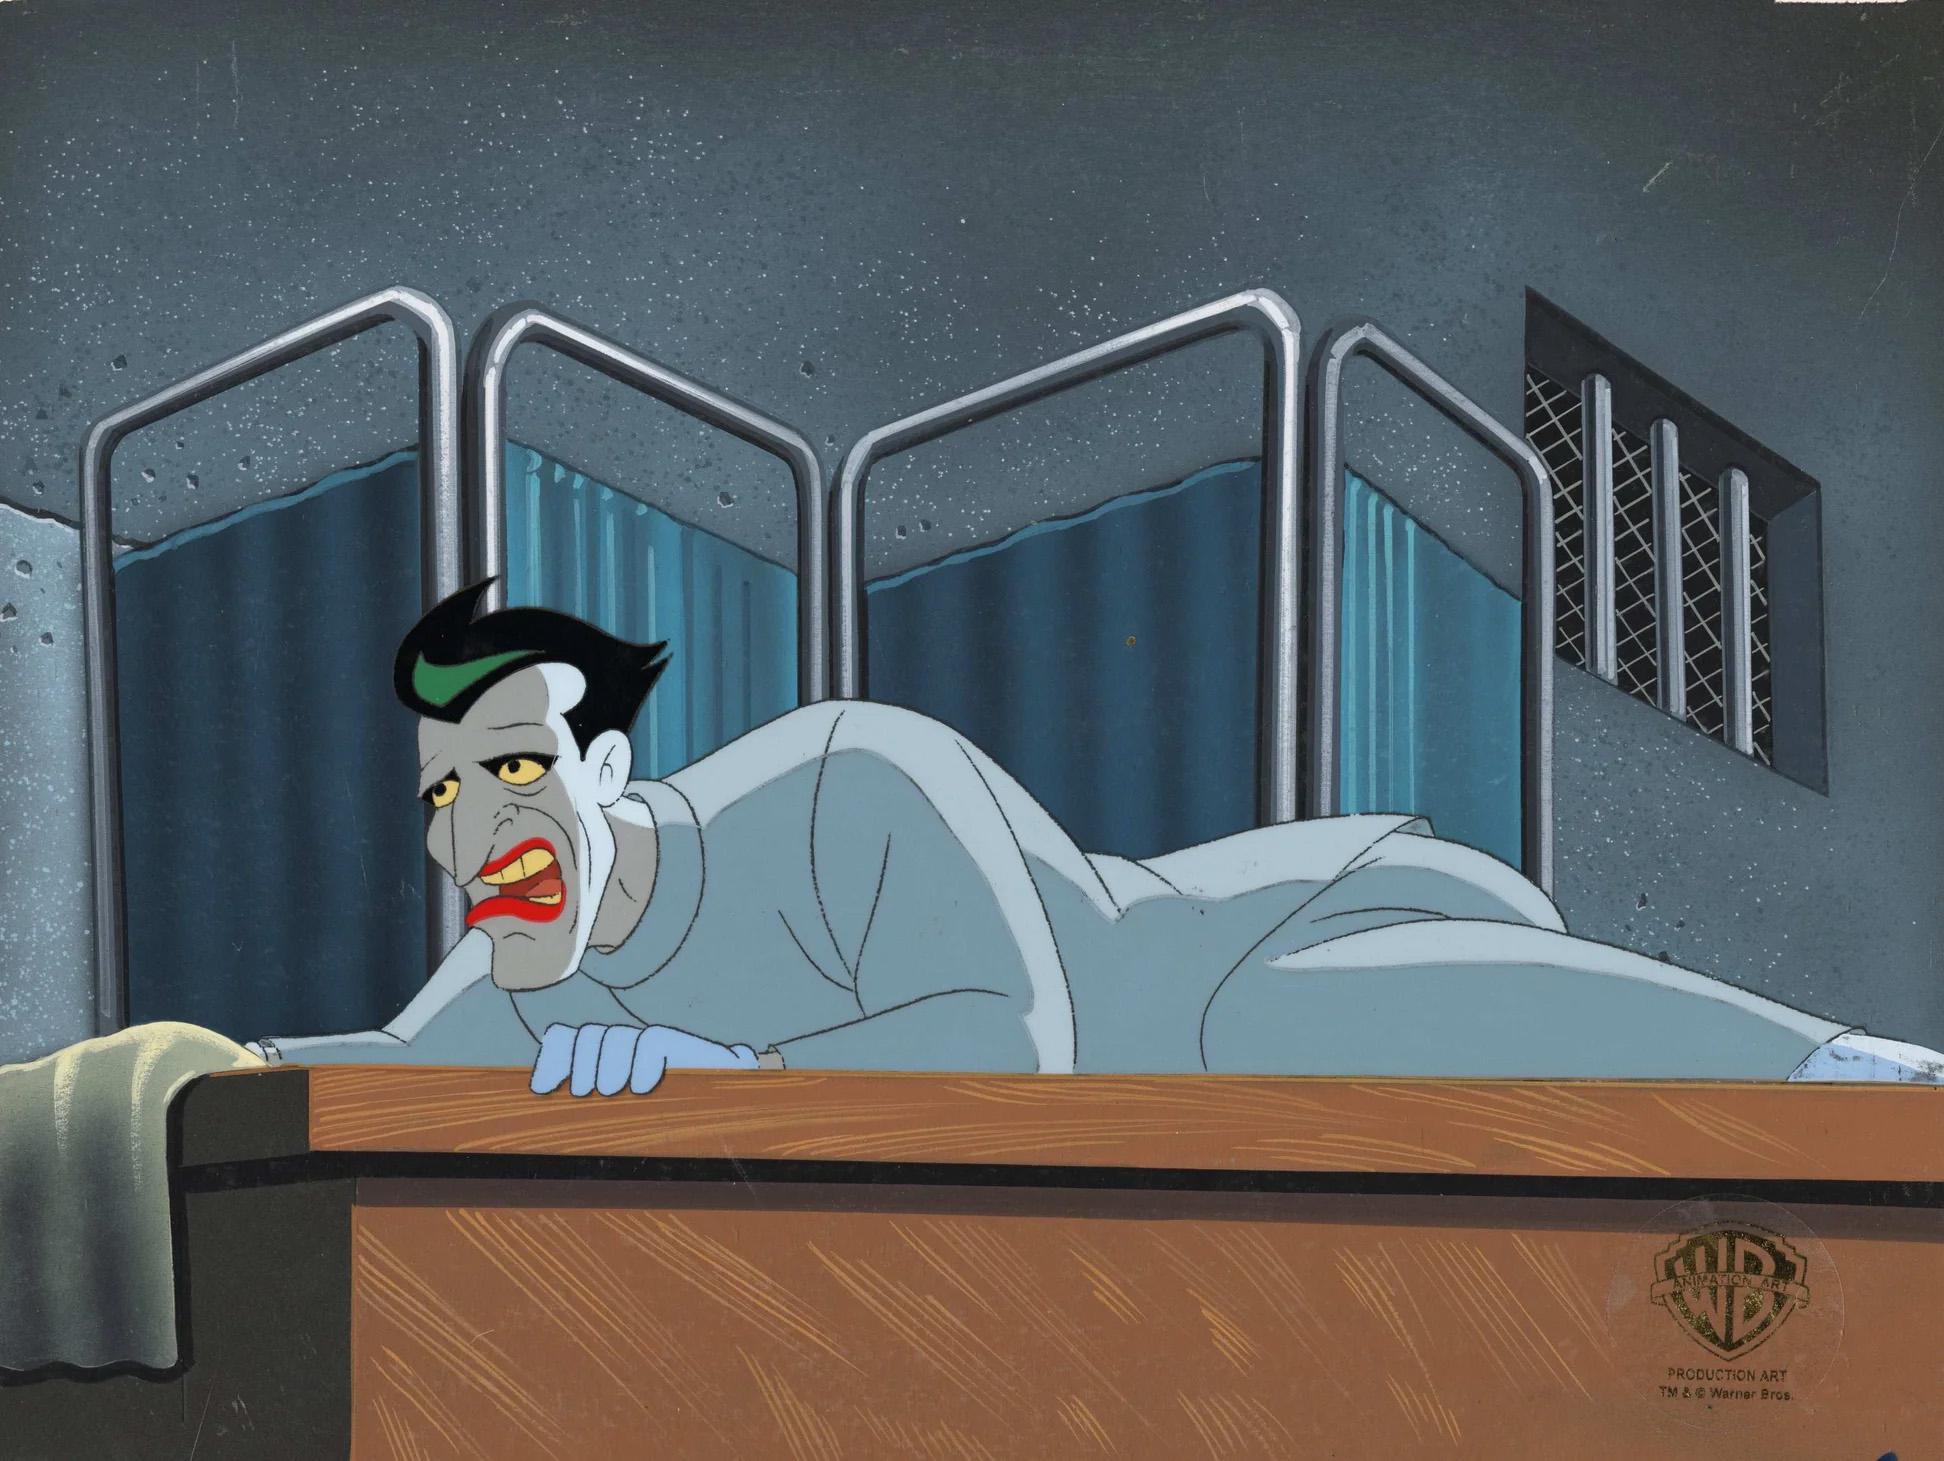 Batman The Animated Series Production Cel sur le fond d'origine : Joker - Art de DC Comics Studio Artists